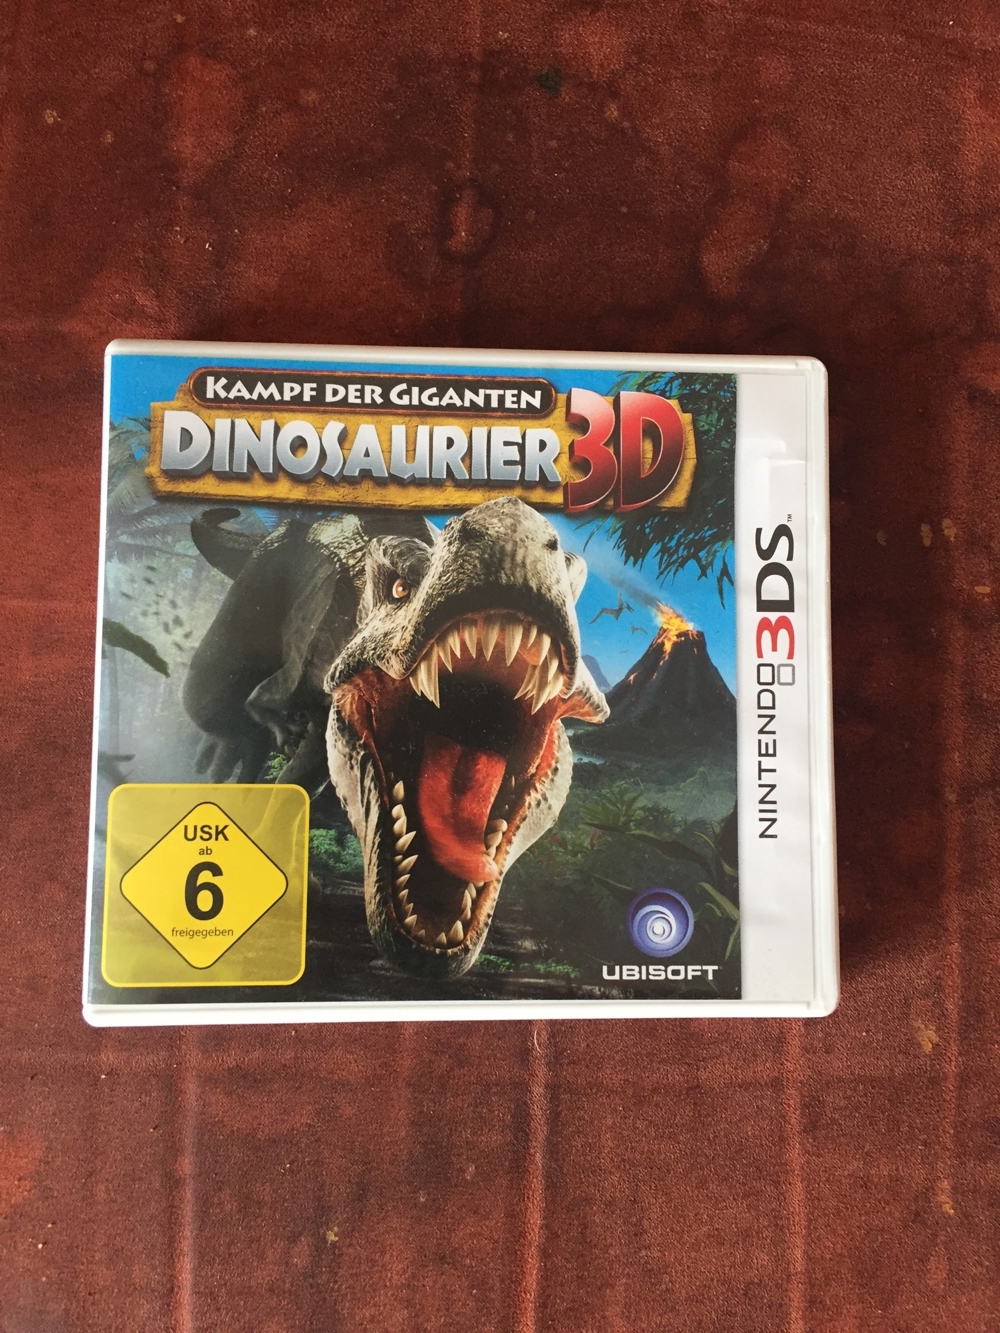 Nintendo 3DS Spiel "Dinosaurier 3D Kampf der Giganten"